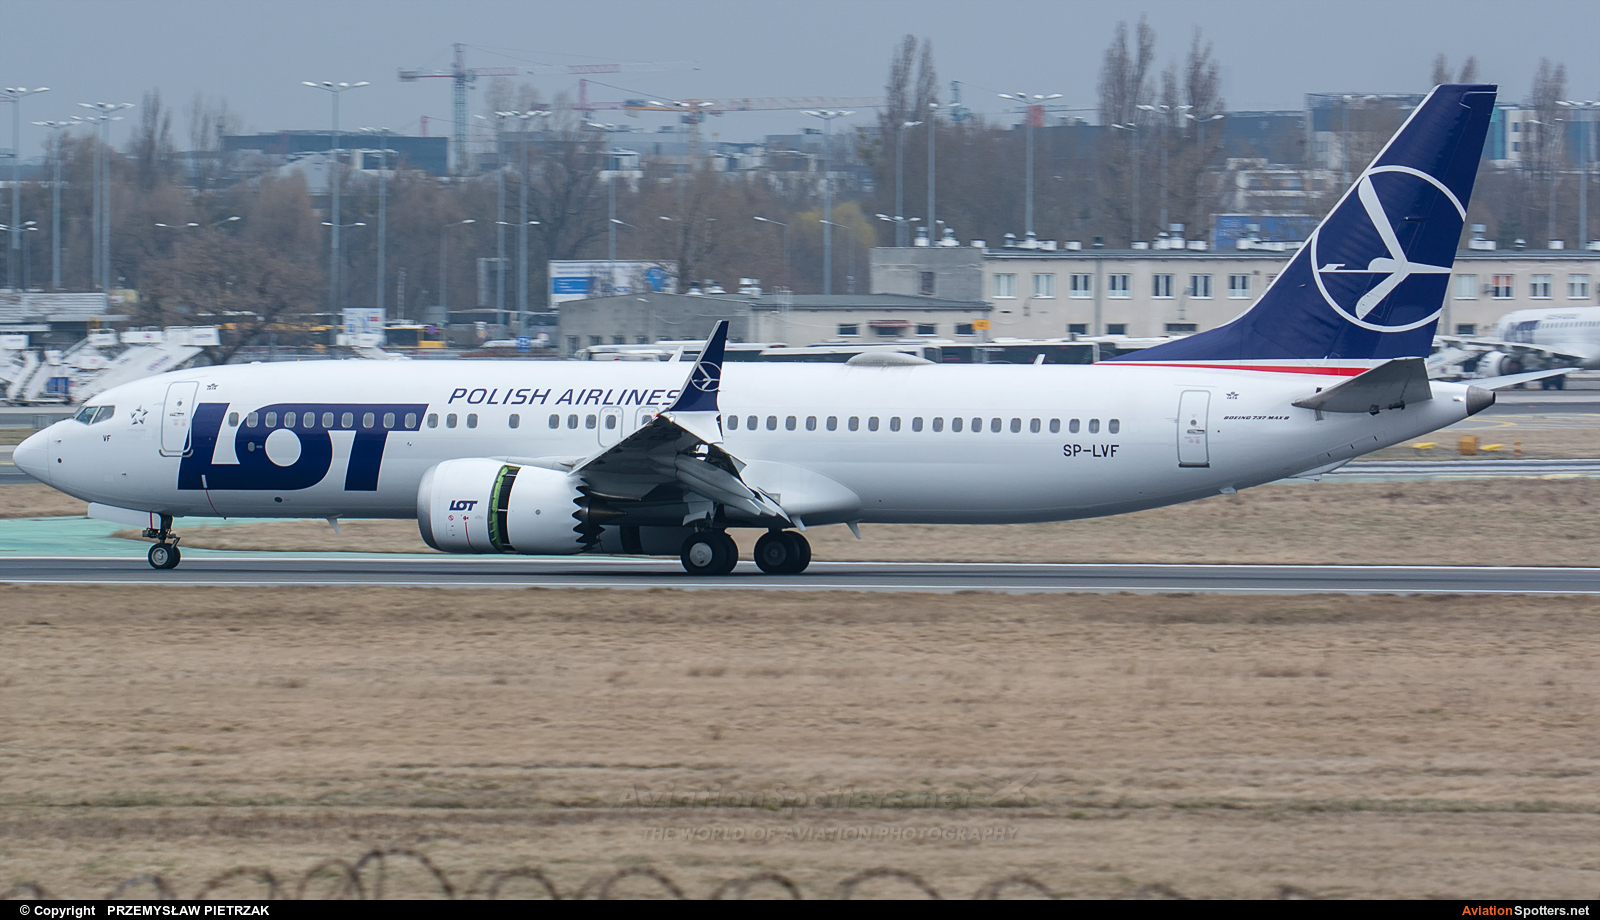 LOT - Polish Airlines  -  737-800  (SP-LVF) By PRZEMYSŁAW PIETRZAK (PEPE74)